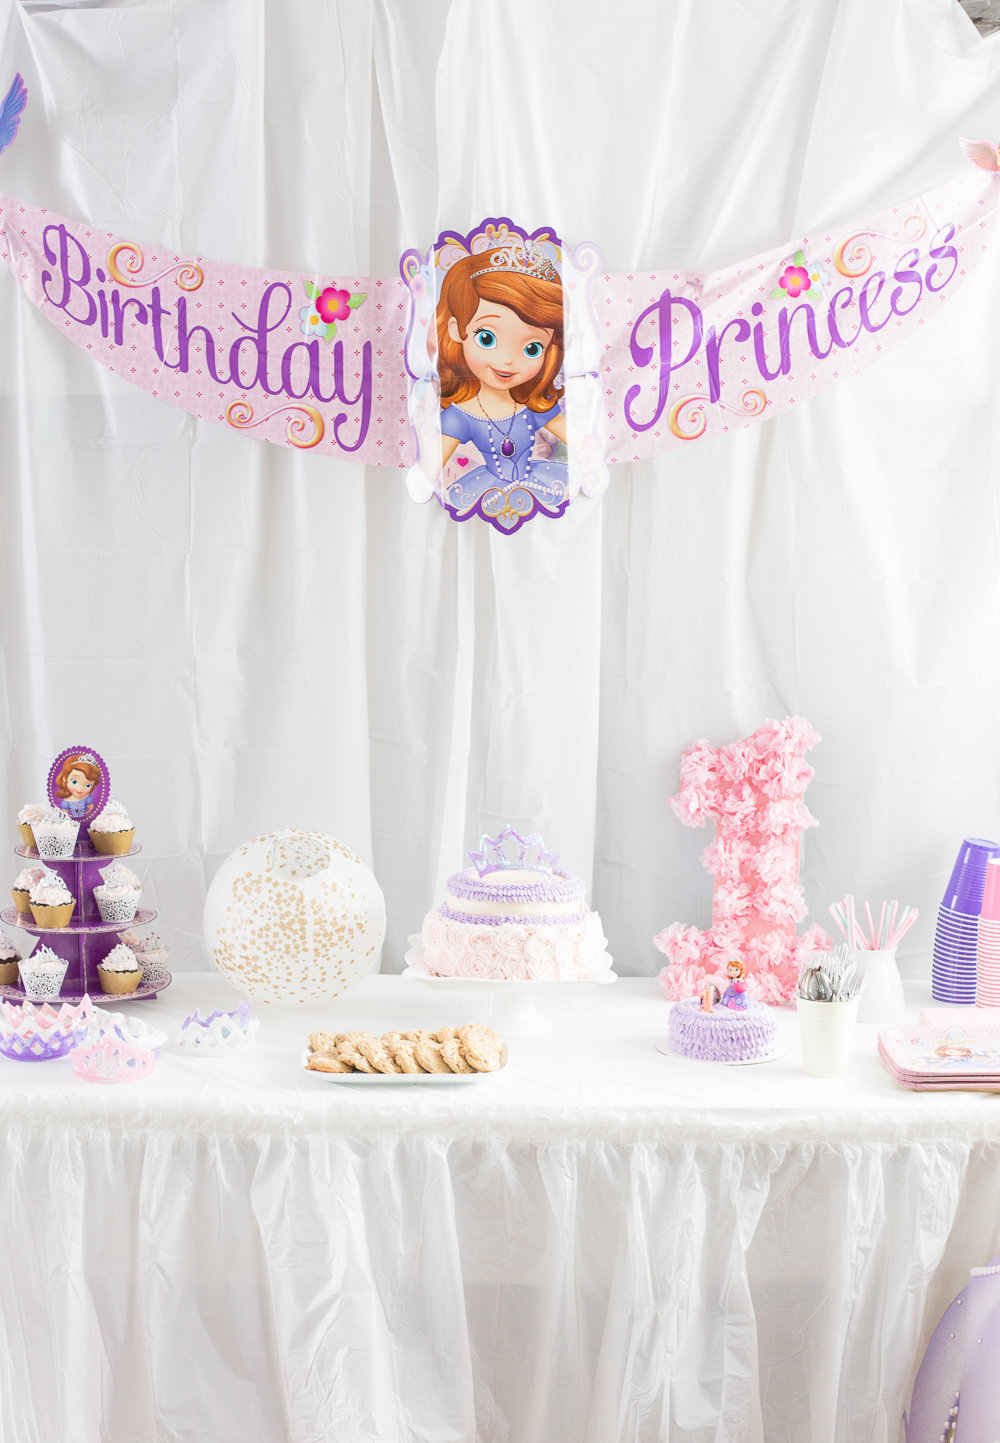  Fiesta Princesa Sofía: 75 ideas de decoración y fotos del tema